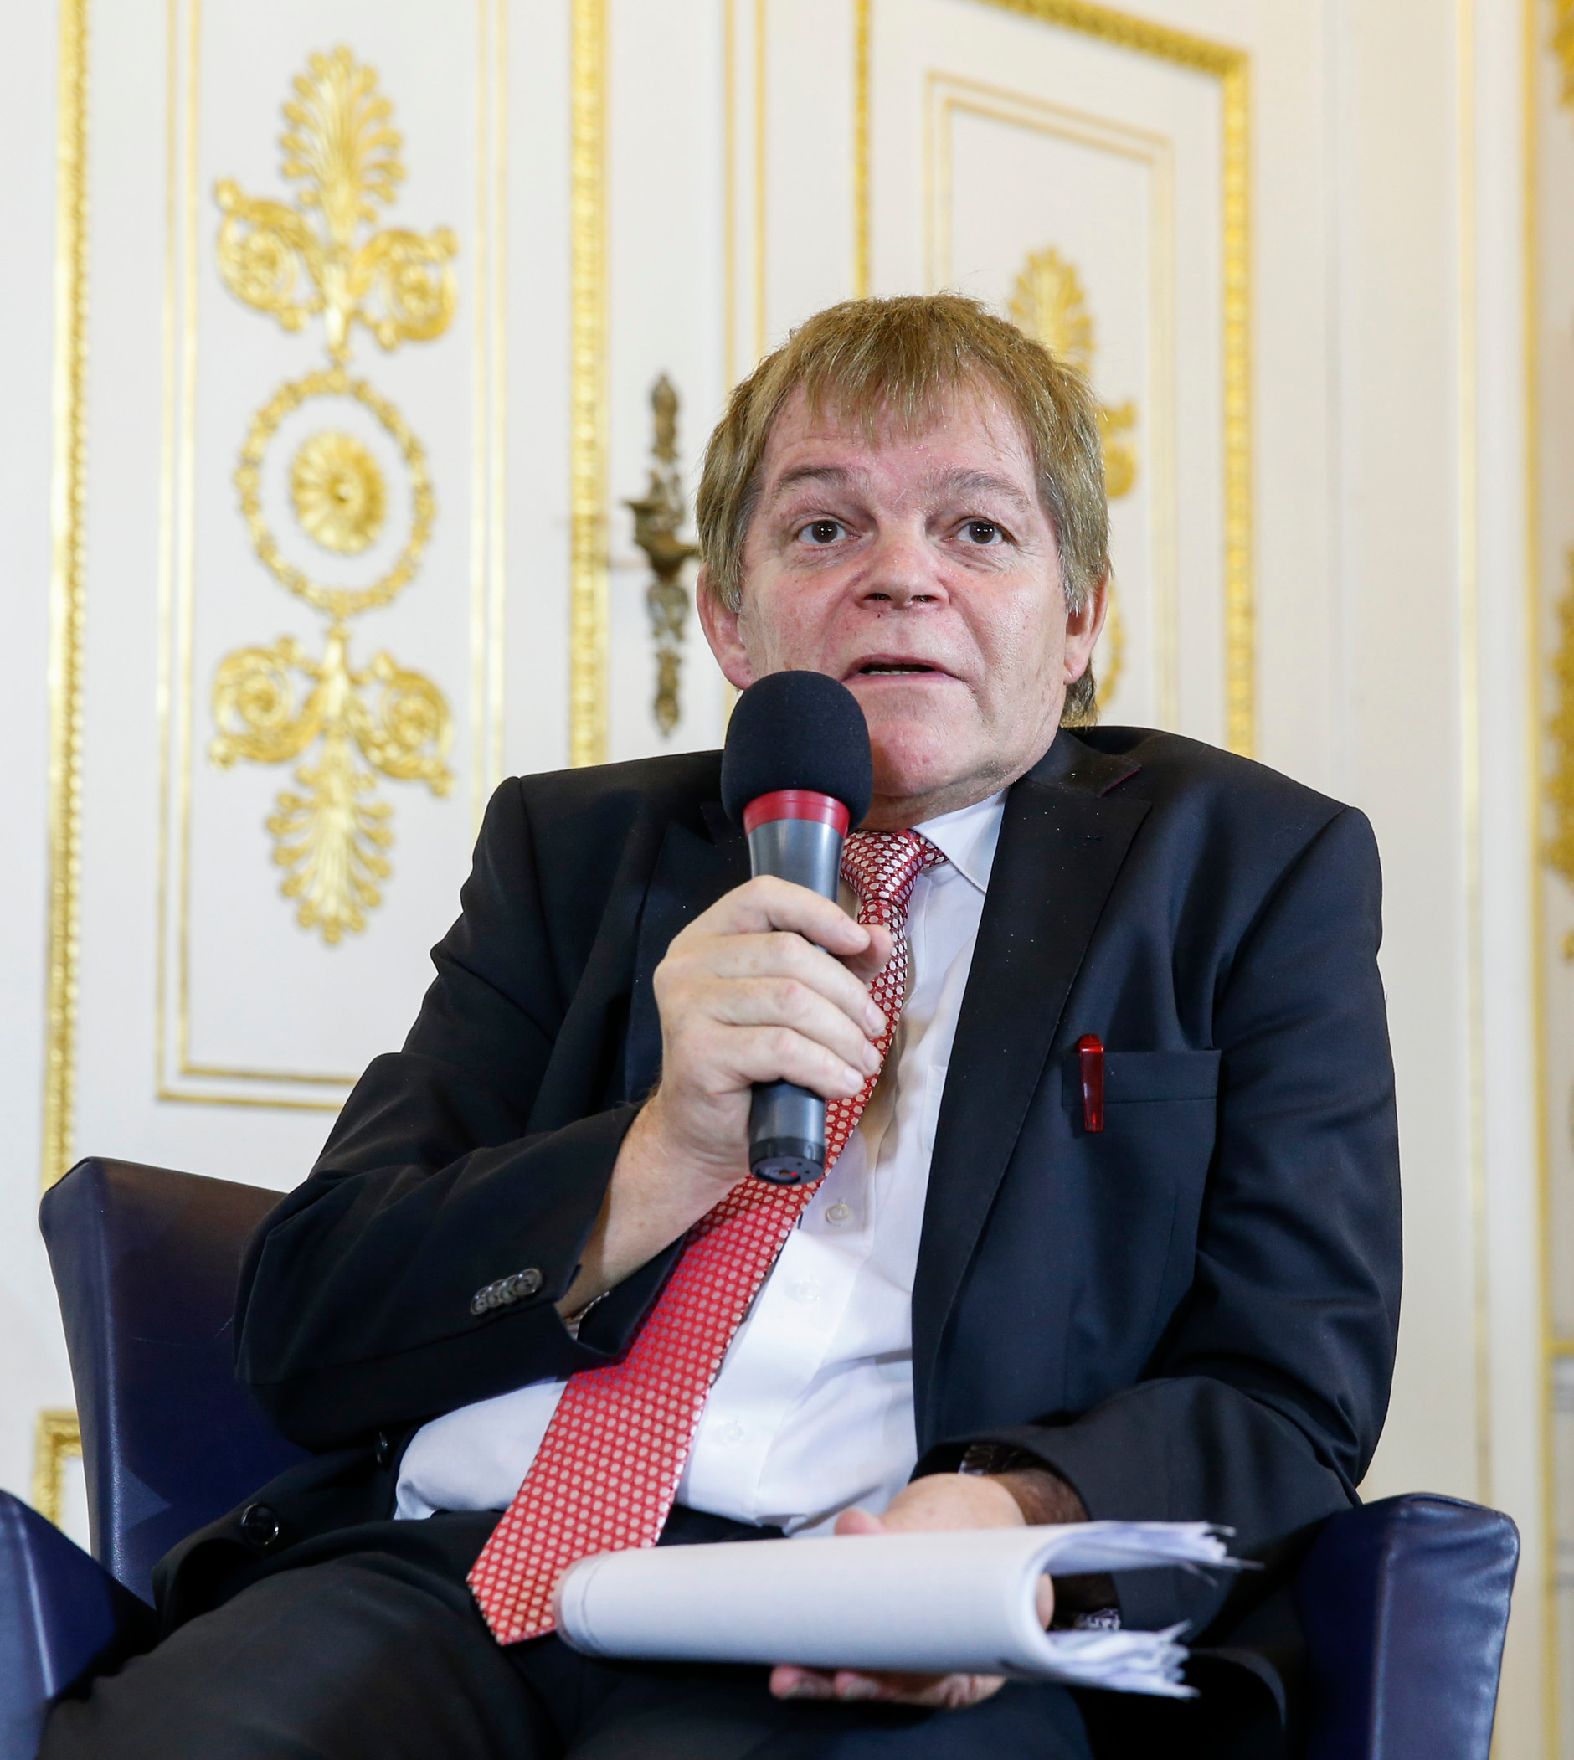 Am 28. Jänner 2015 fand im Bundeskanzleramt die Veranstaltung „Was bedeutet Datenschutz für Unternehmen“ anlässlich des 9. Europäischen Datenschutztages statt. Im Bild Johann Maier, Vorsitzender des Datenschutzrates.